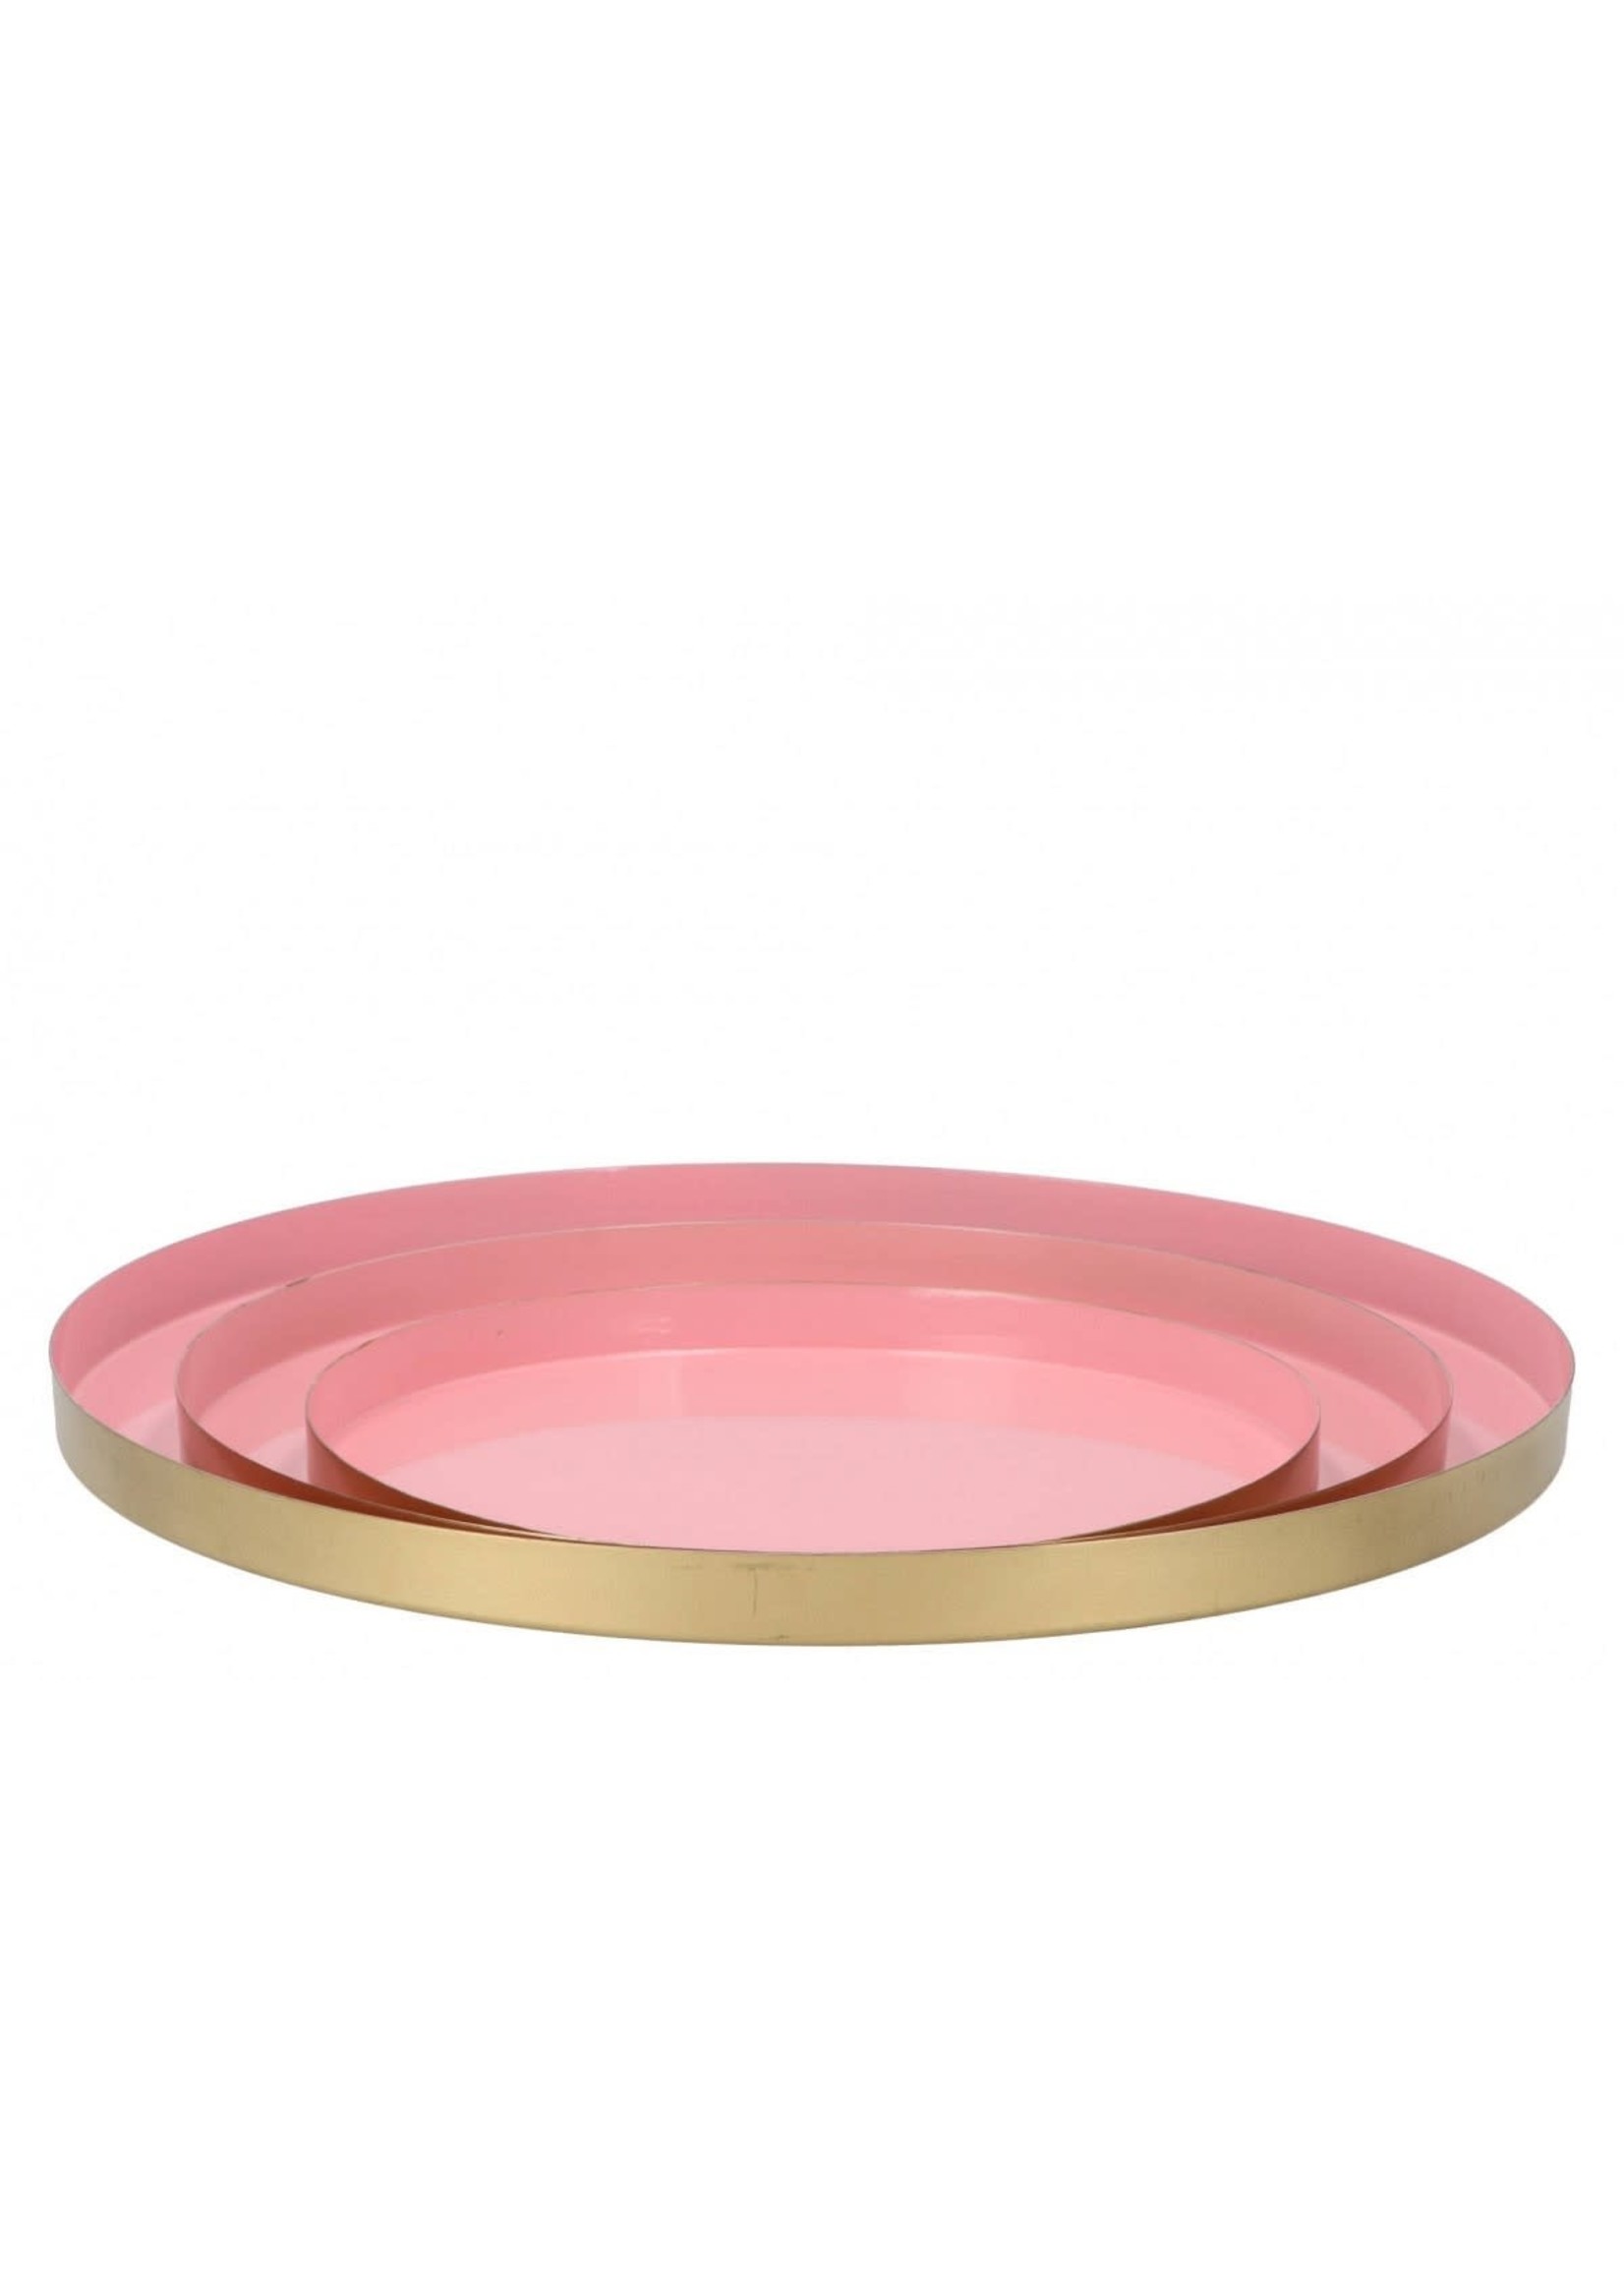 Woondeco Marrakech k light pink plate 33x2cm